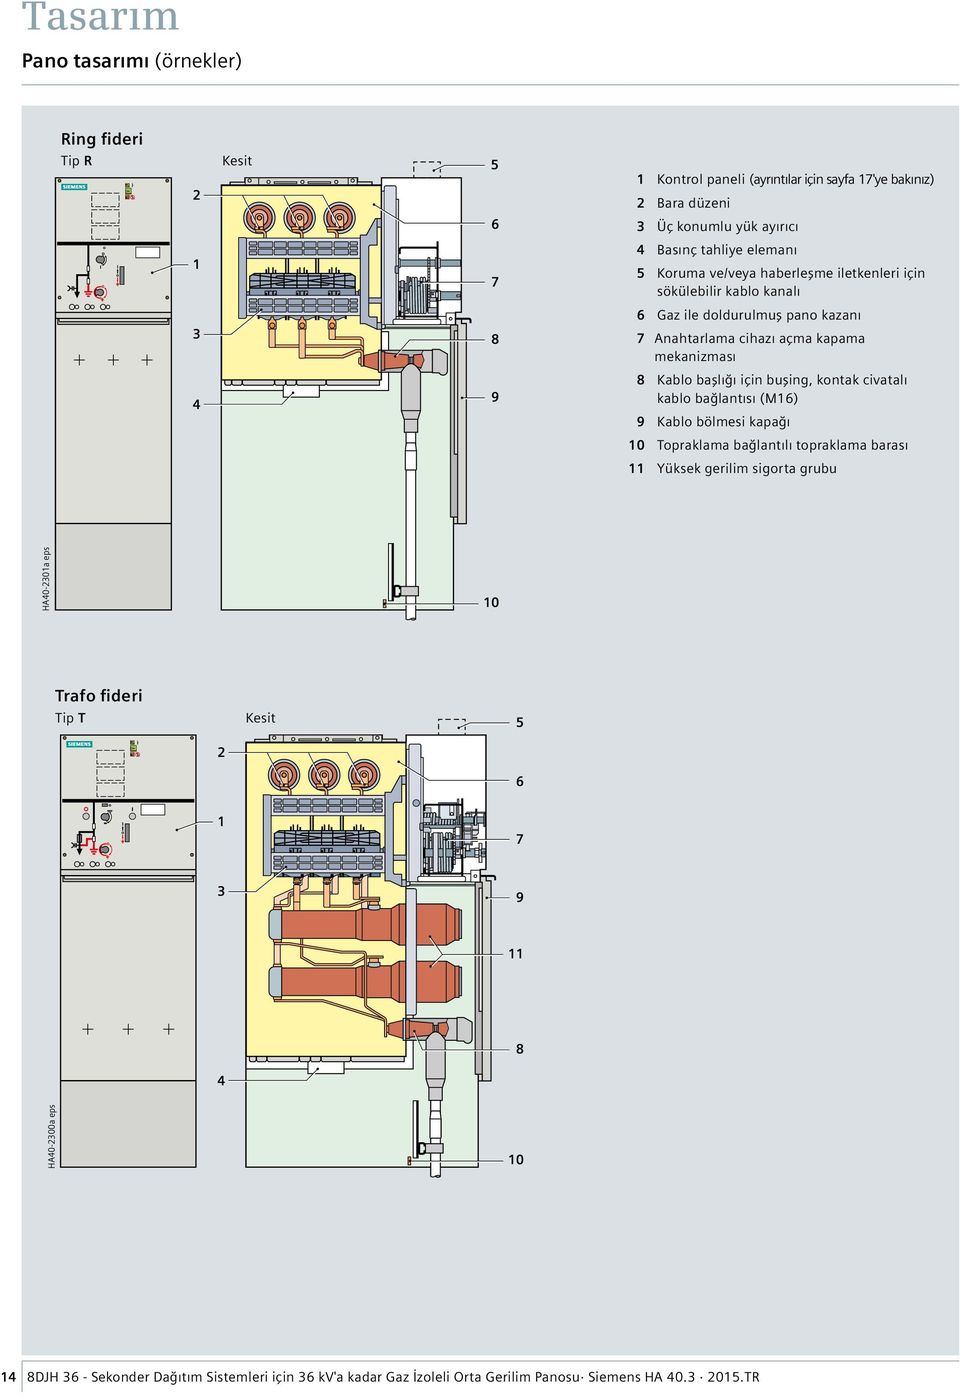 kapama mekanizması 8 Kablo başlığı için buşing, kontak civatalı kablo bağlantısı (M16) 9 Kablo bölmesi kapağı 10 Topraklama bağlantılı topraklama barası 11